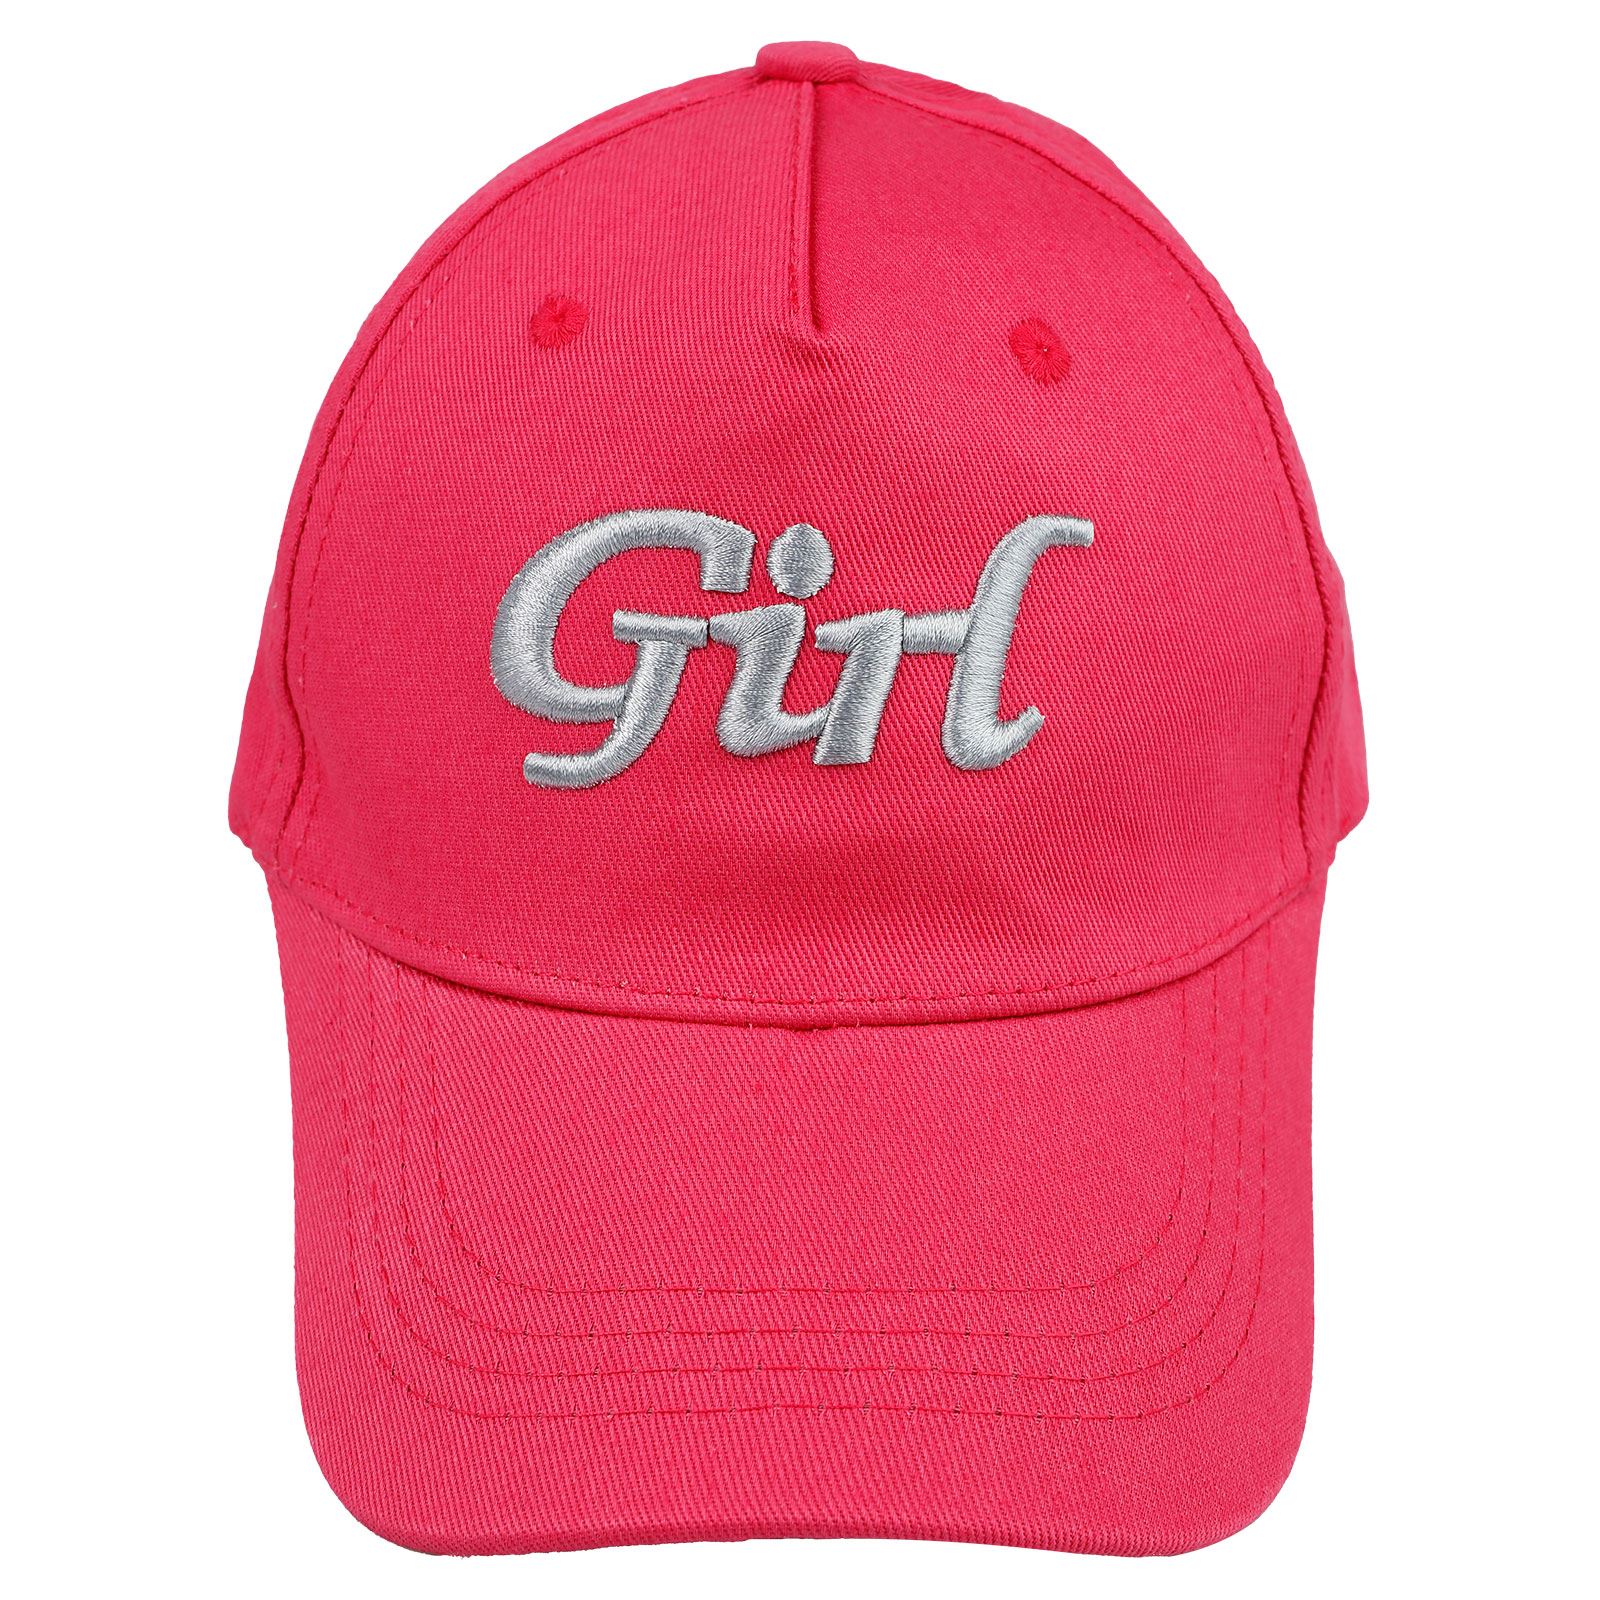 Civil Girls Kız Çocuk Kep Şapka 10-13 Yaş Fuşya